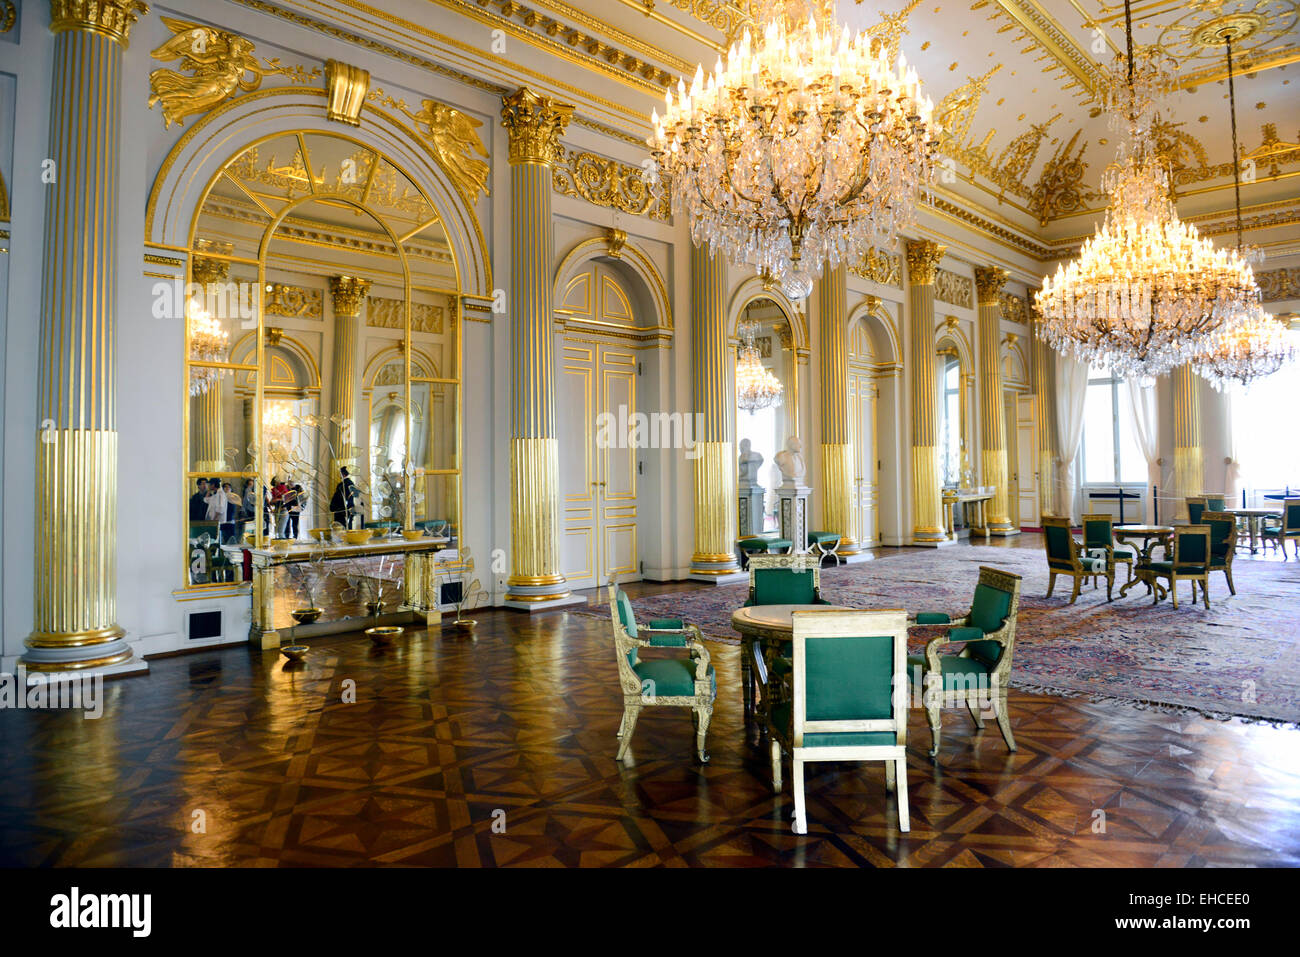 Die schöne Innenausstattung Säle und Räume des königlichen Palastes in Brüssel. Stockfoto